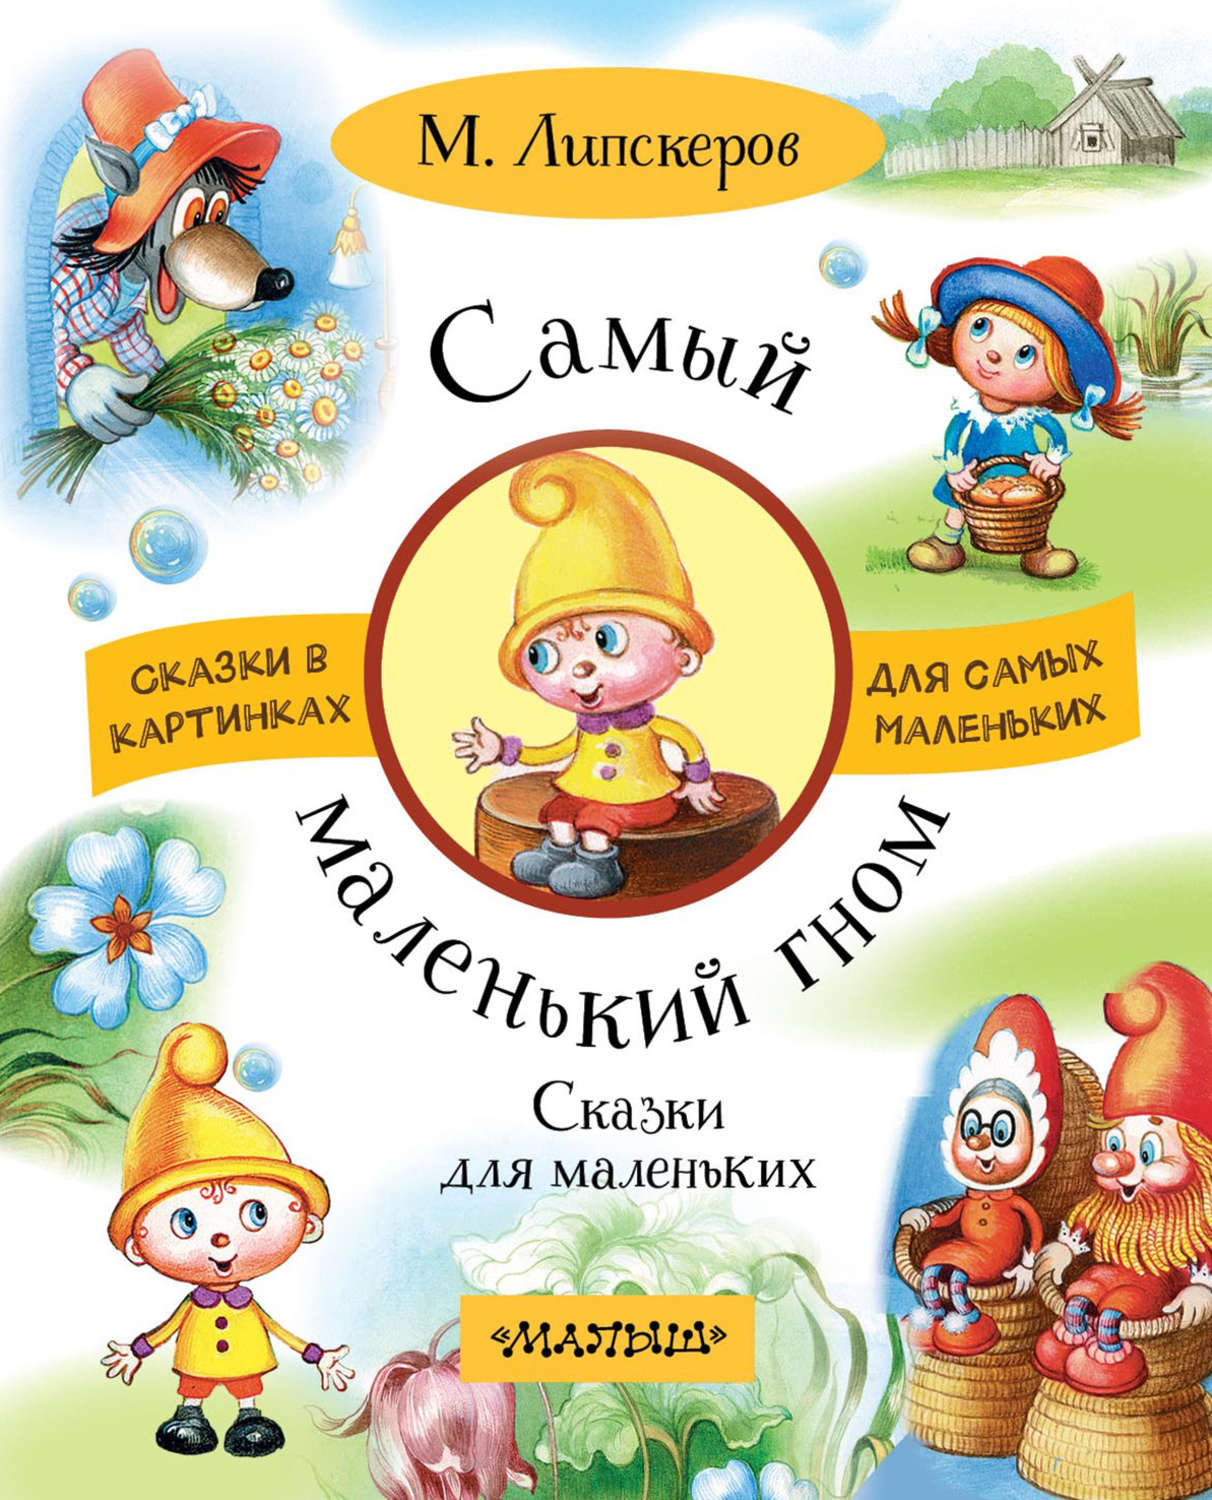 Сказка для самых маленьких детей. Маленький Гном Вася Липскеров иллюстрации. Книга Липскерова маленький Гном.